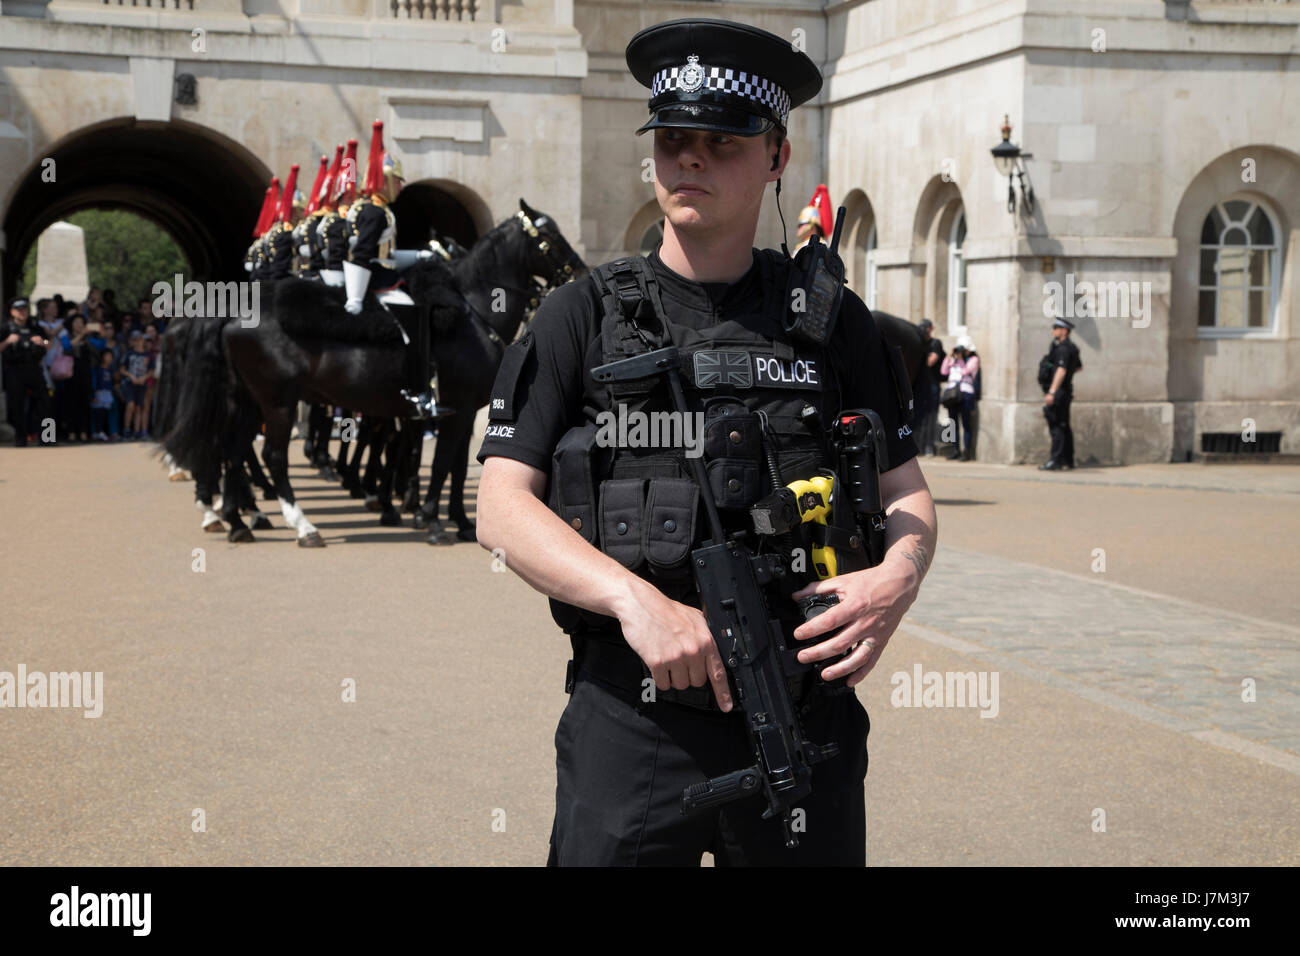 À la suite des récentes attaques terroristes, la sécurité est renforcée avec plus de policiers armés dans les rues, les services de police importants bâtiments, comme ici à Horse Guards Parade au cours de l'évolution de la Garde côtière canadienne à Londres, Angleterre, Royaume-Uni. Banque D'Images